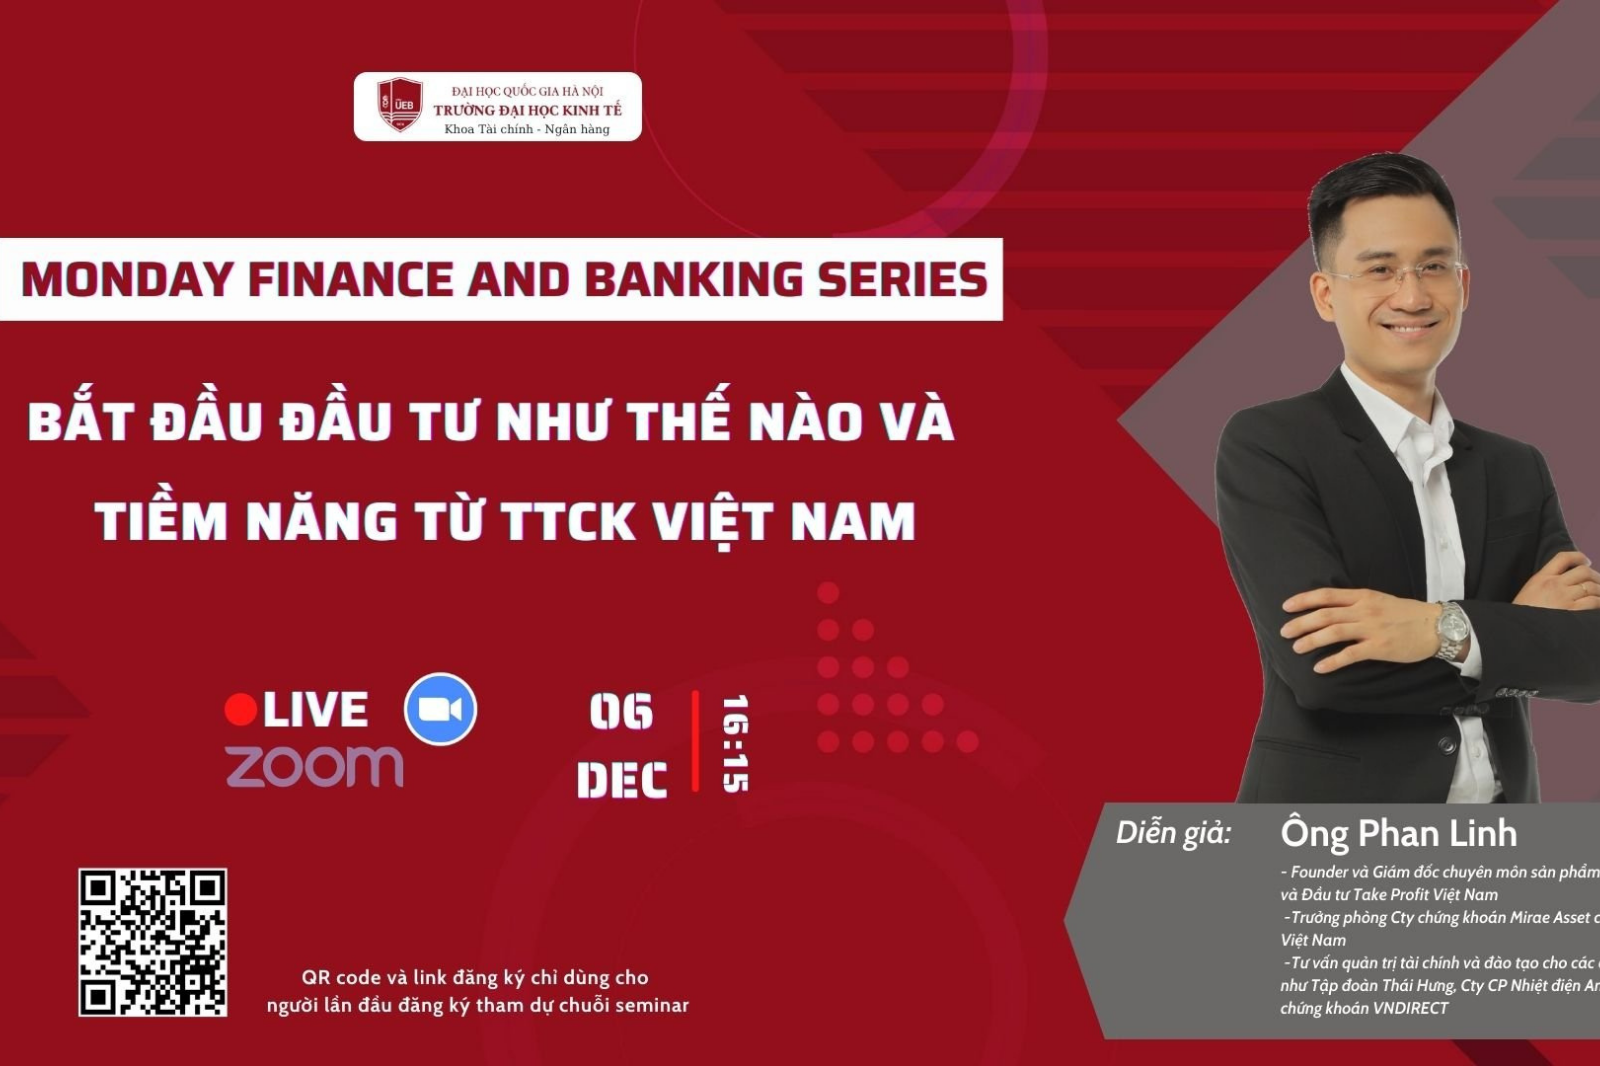 Monday Finance and Banking Series số 19 – Bắt đầu đầu tư như thế nào và tiềm năng từ Thị trường Chứng khoán Việt Nam